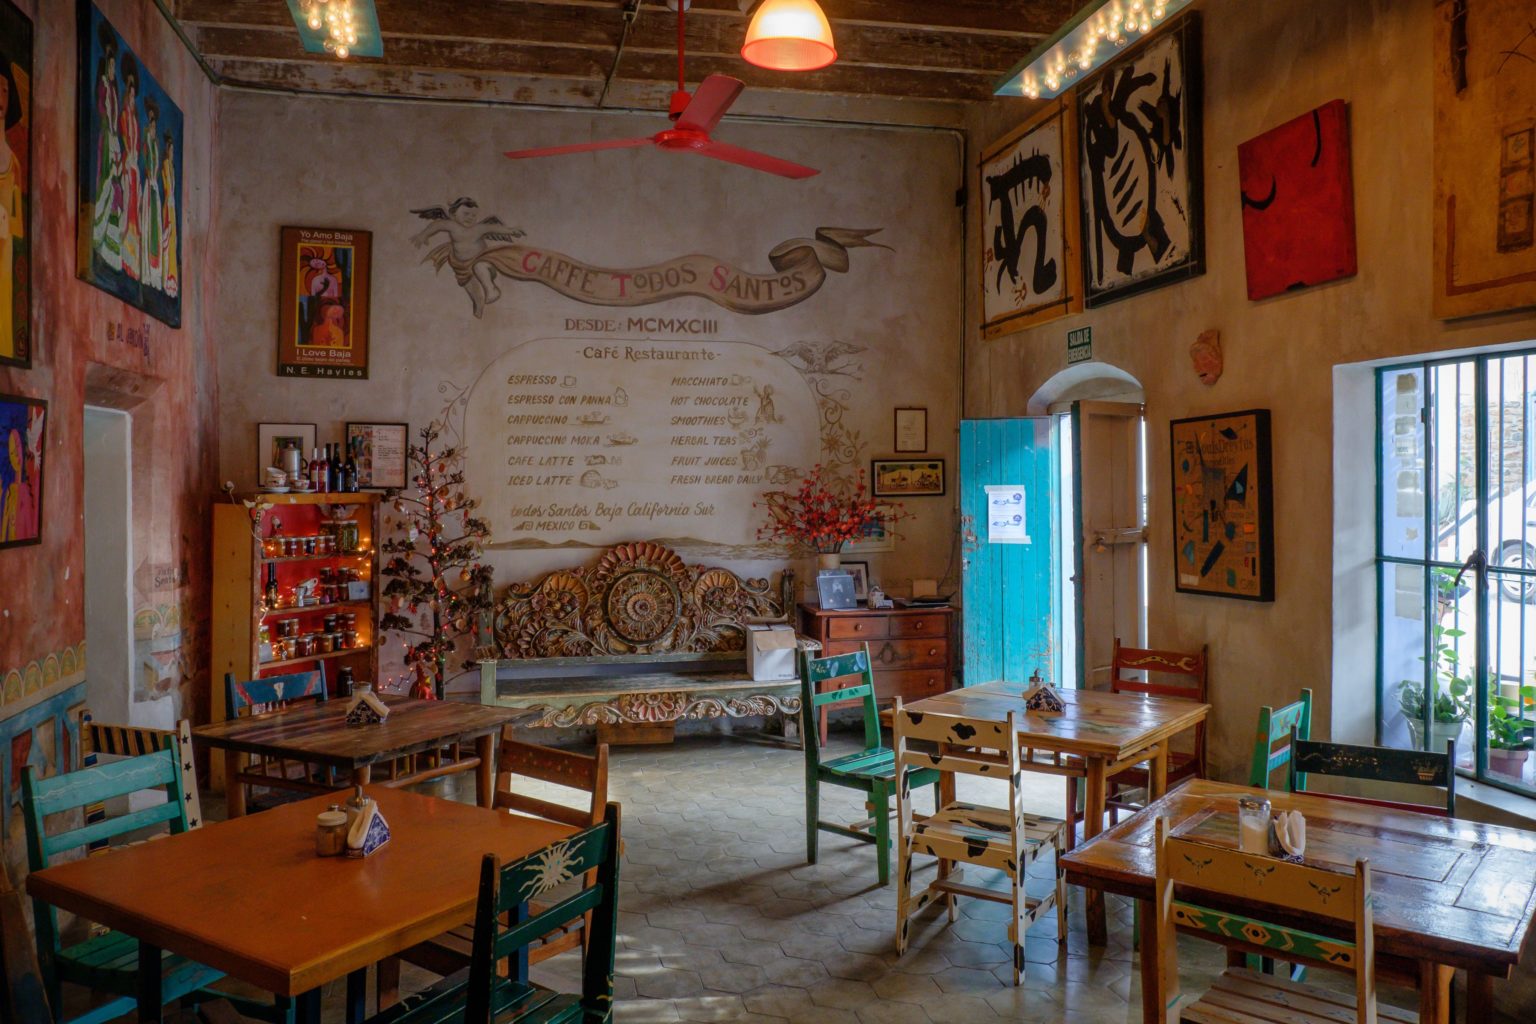 quaint mexican cafe interior